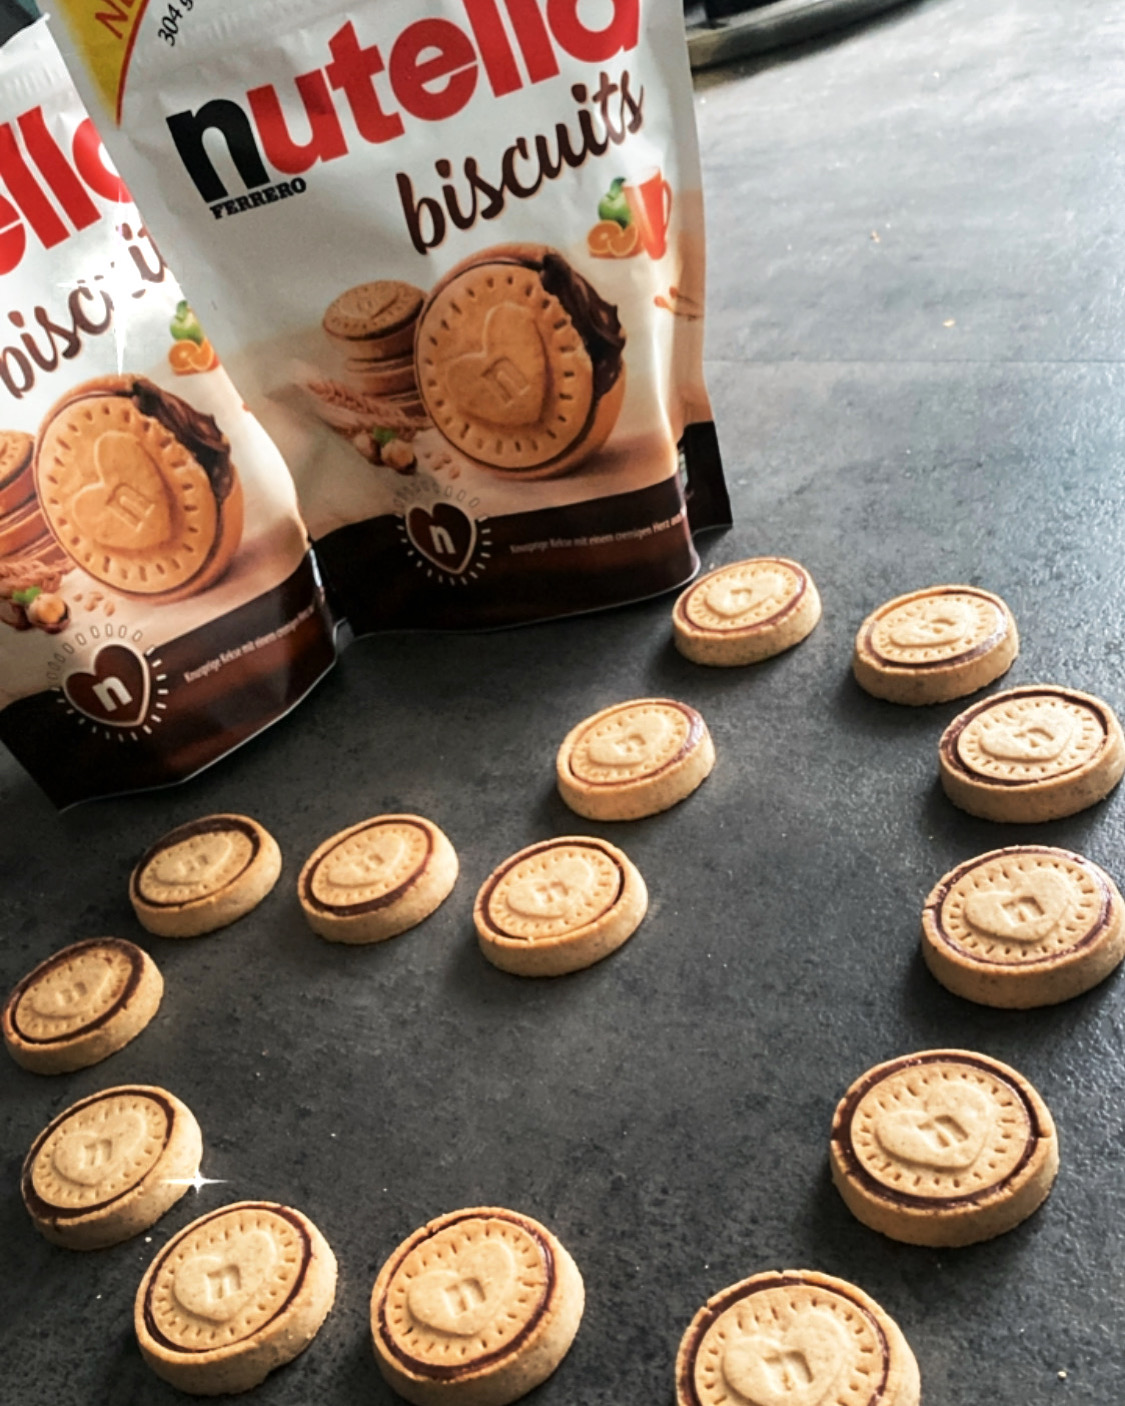 Produkttest - Nutella Biscuits